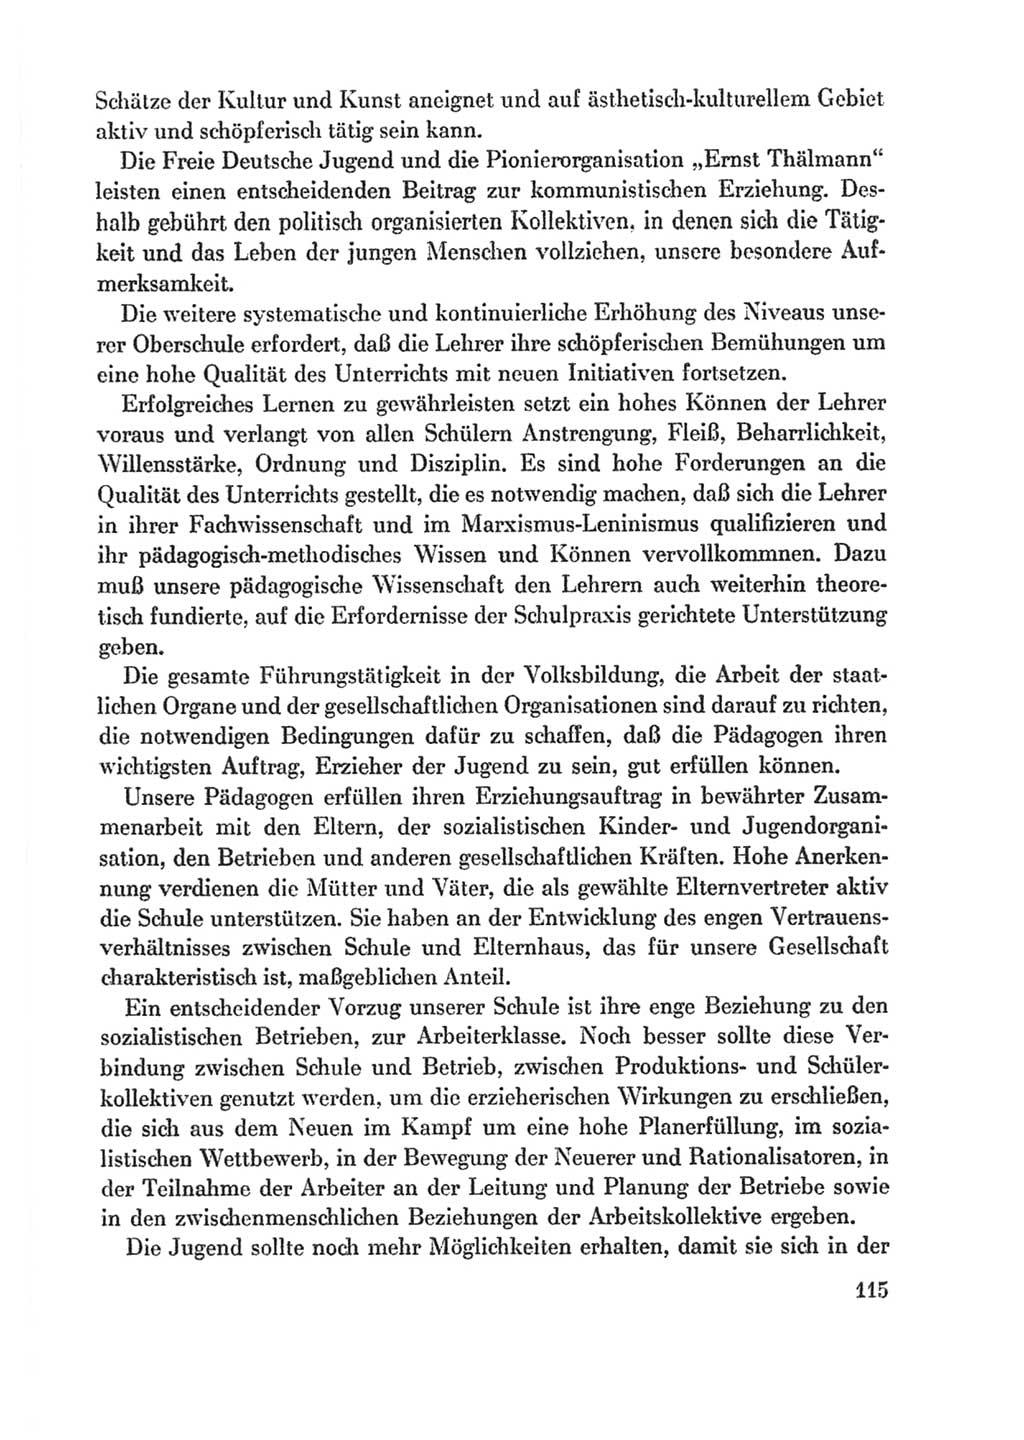 Protokoll der Verhandlungen des Ⅸ. Parteitages der Sozialistischen Einheitspartei Deutschlands (SED) [Deutsche Demokratische Republik (DDR)] 1976, Band 1, Seite 115 (Prot. Verh. Ⅸ. PT SED DDR 1976, Bd. 1, S. 115)